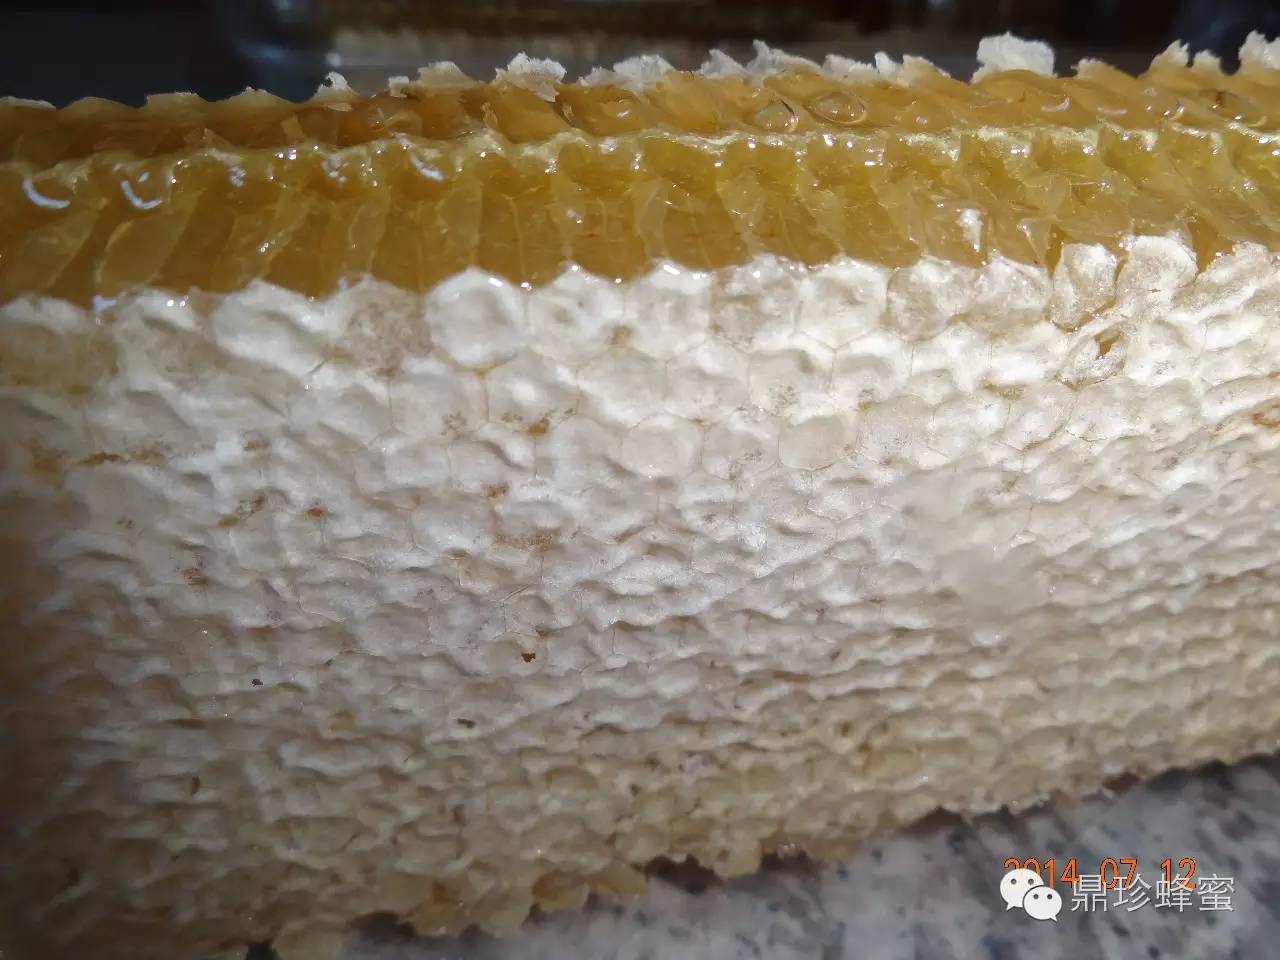 河北收购蜂蜜 蜂蜜怎样去斑 蜂蜜可以加鸡蛋吗 蜂王浆和蜂蜜区别 补肾中药可以加蜂蜜吗